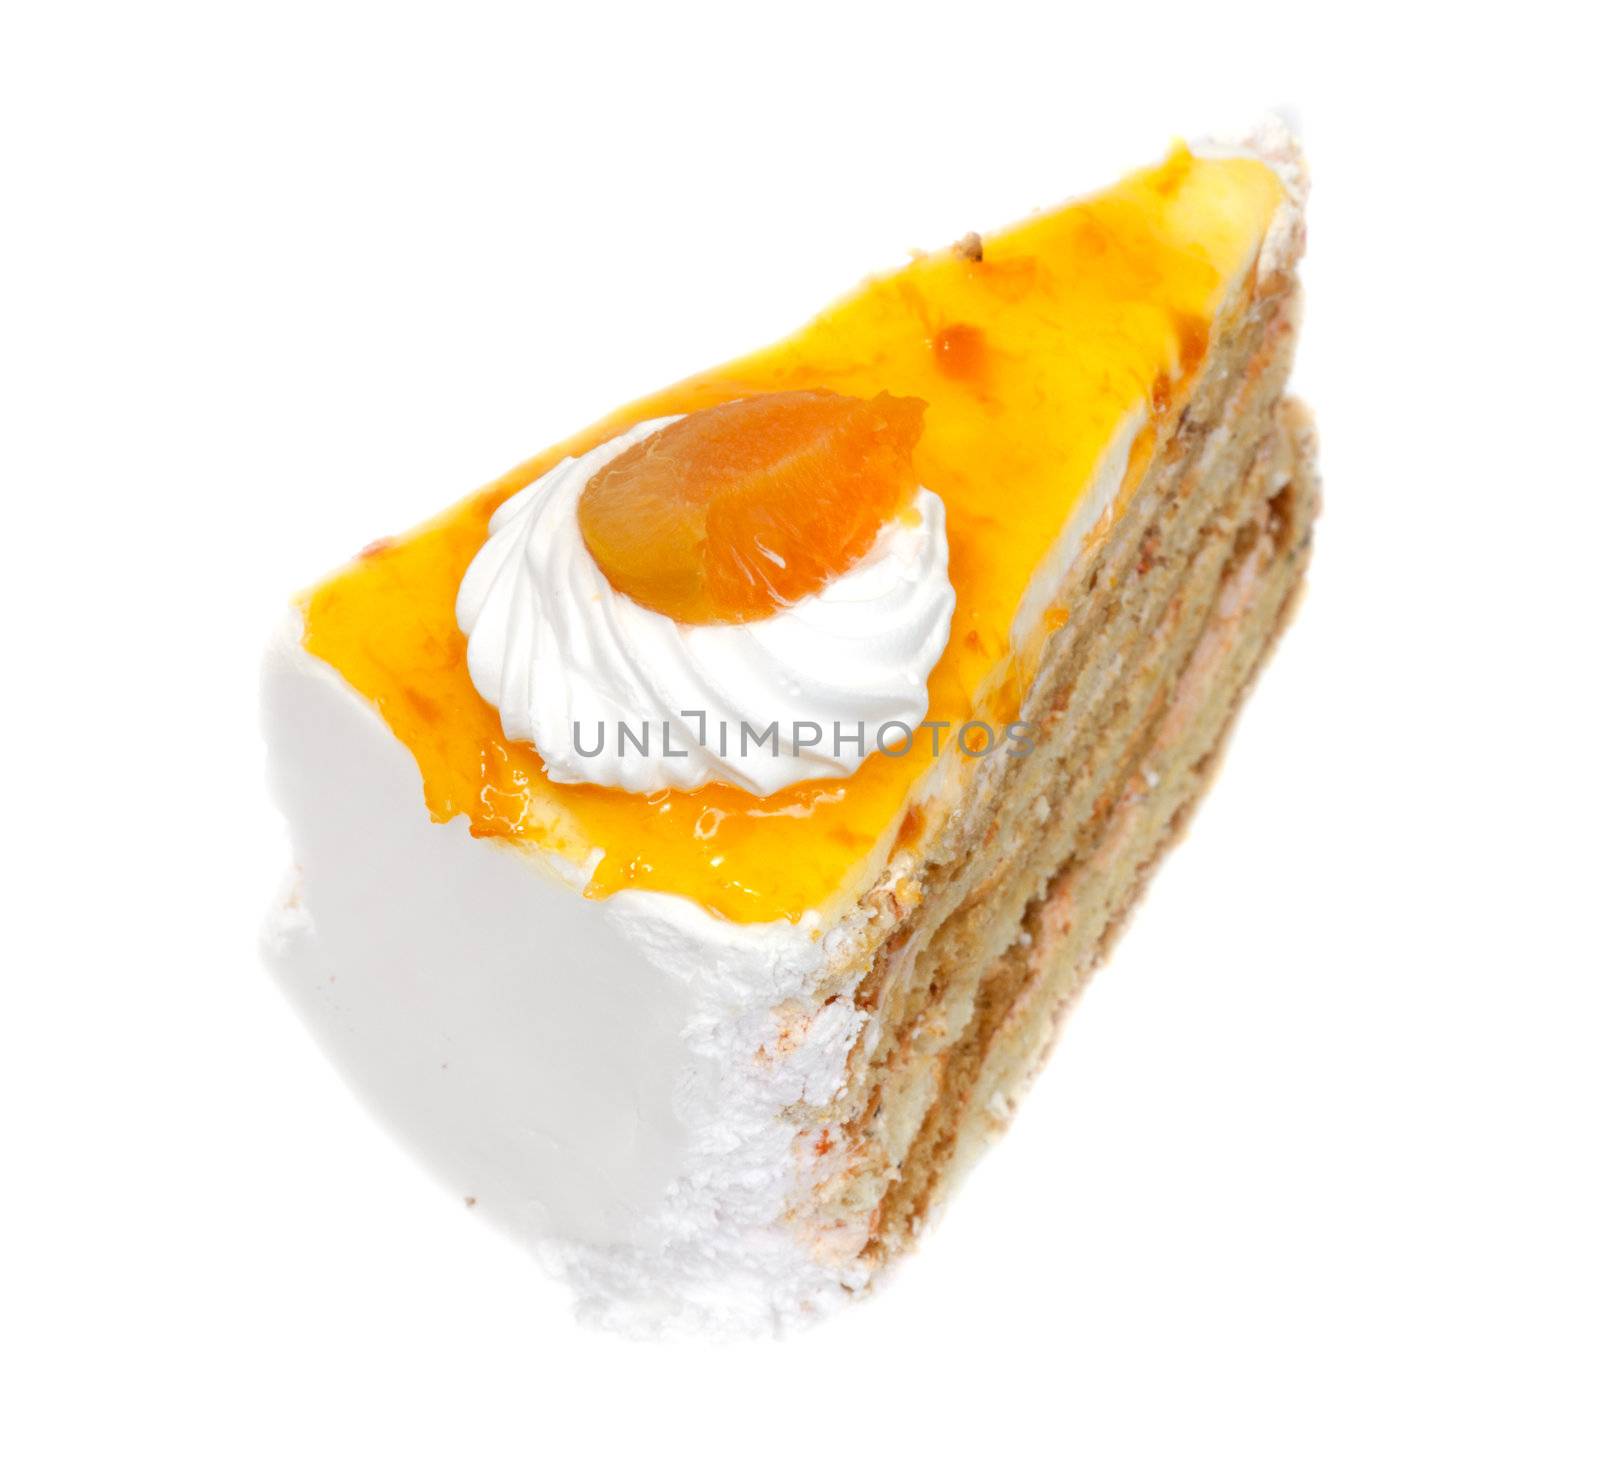 orange cake isolated on white background 